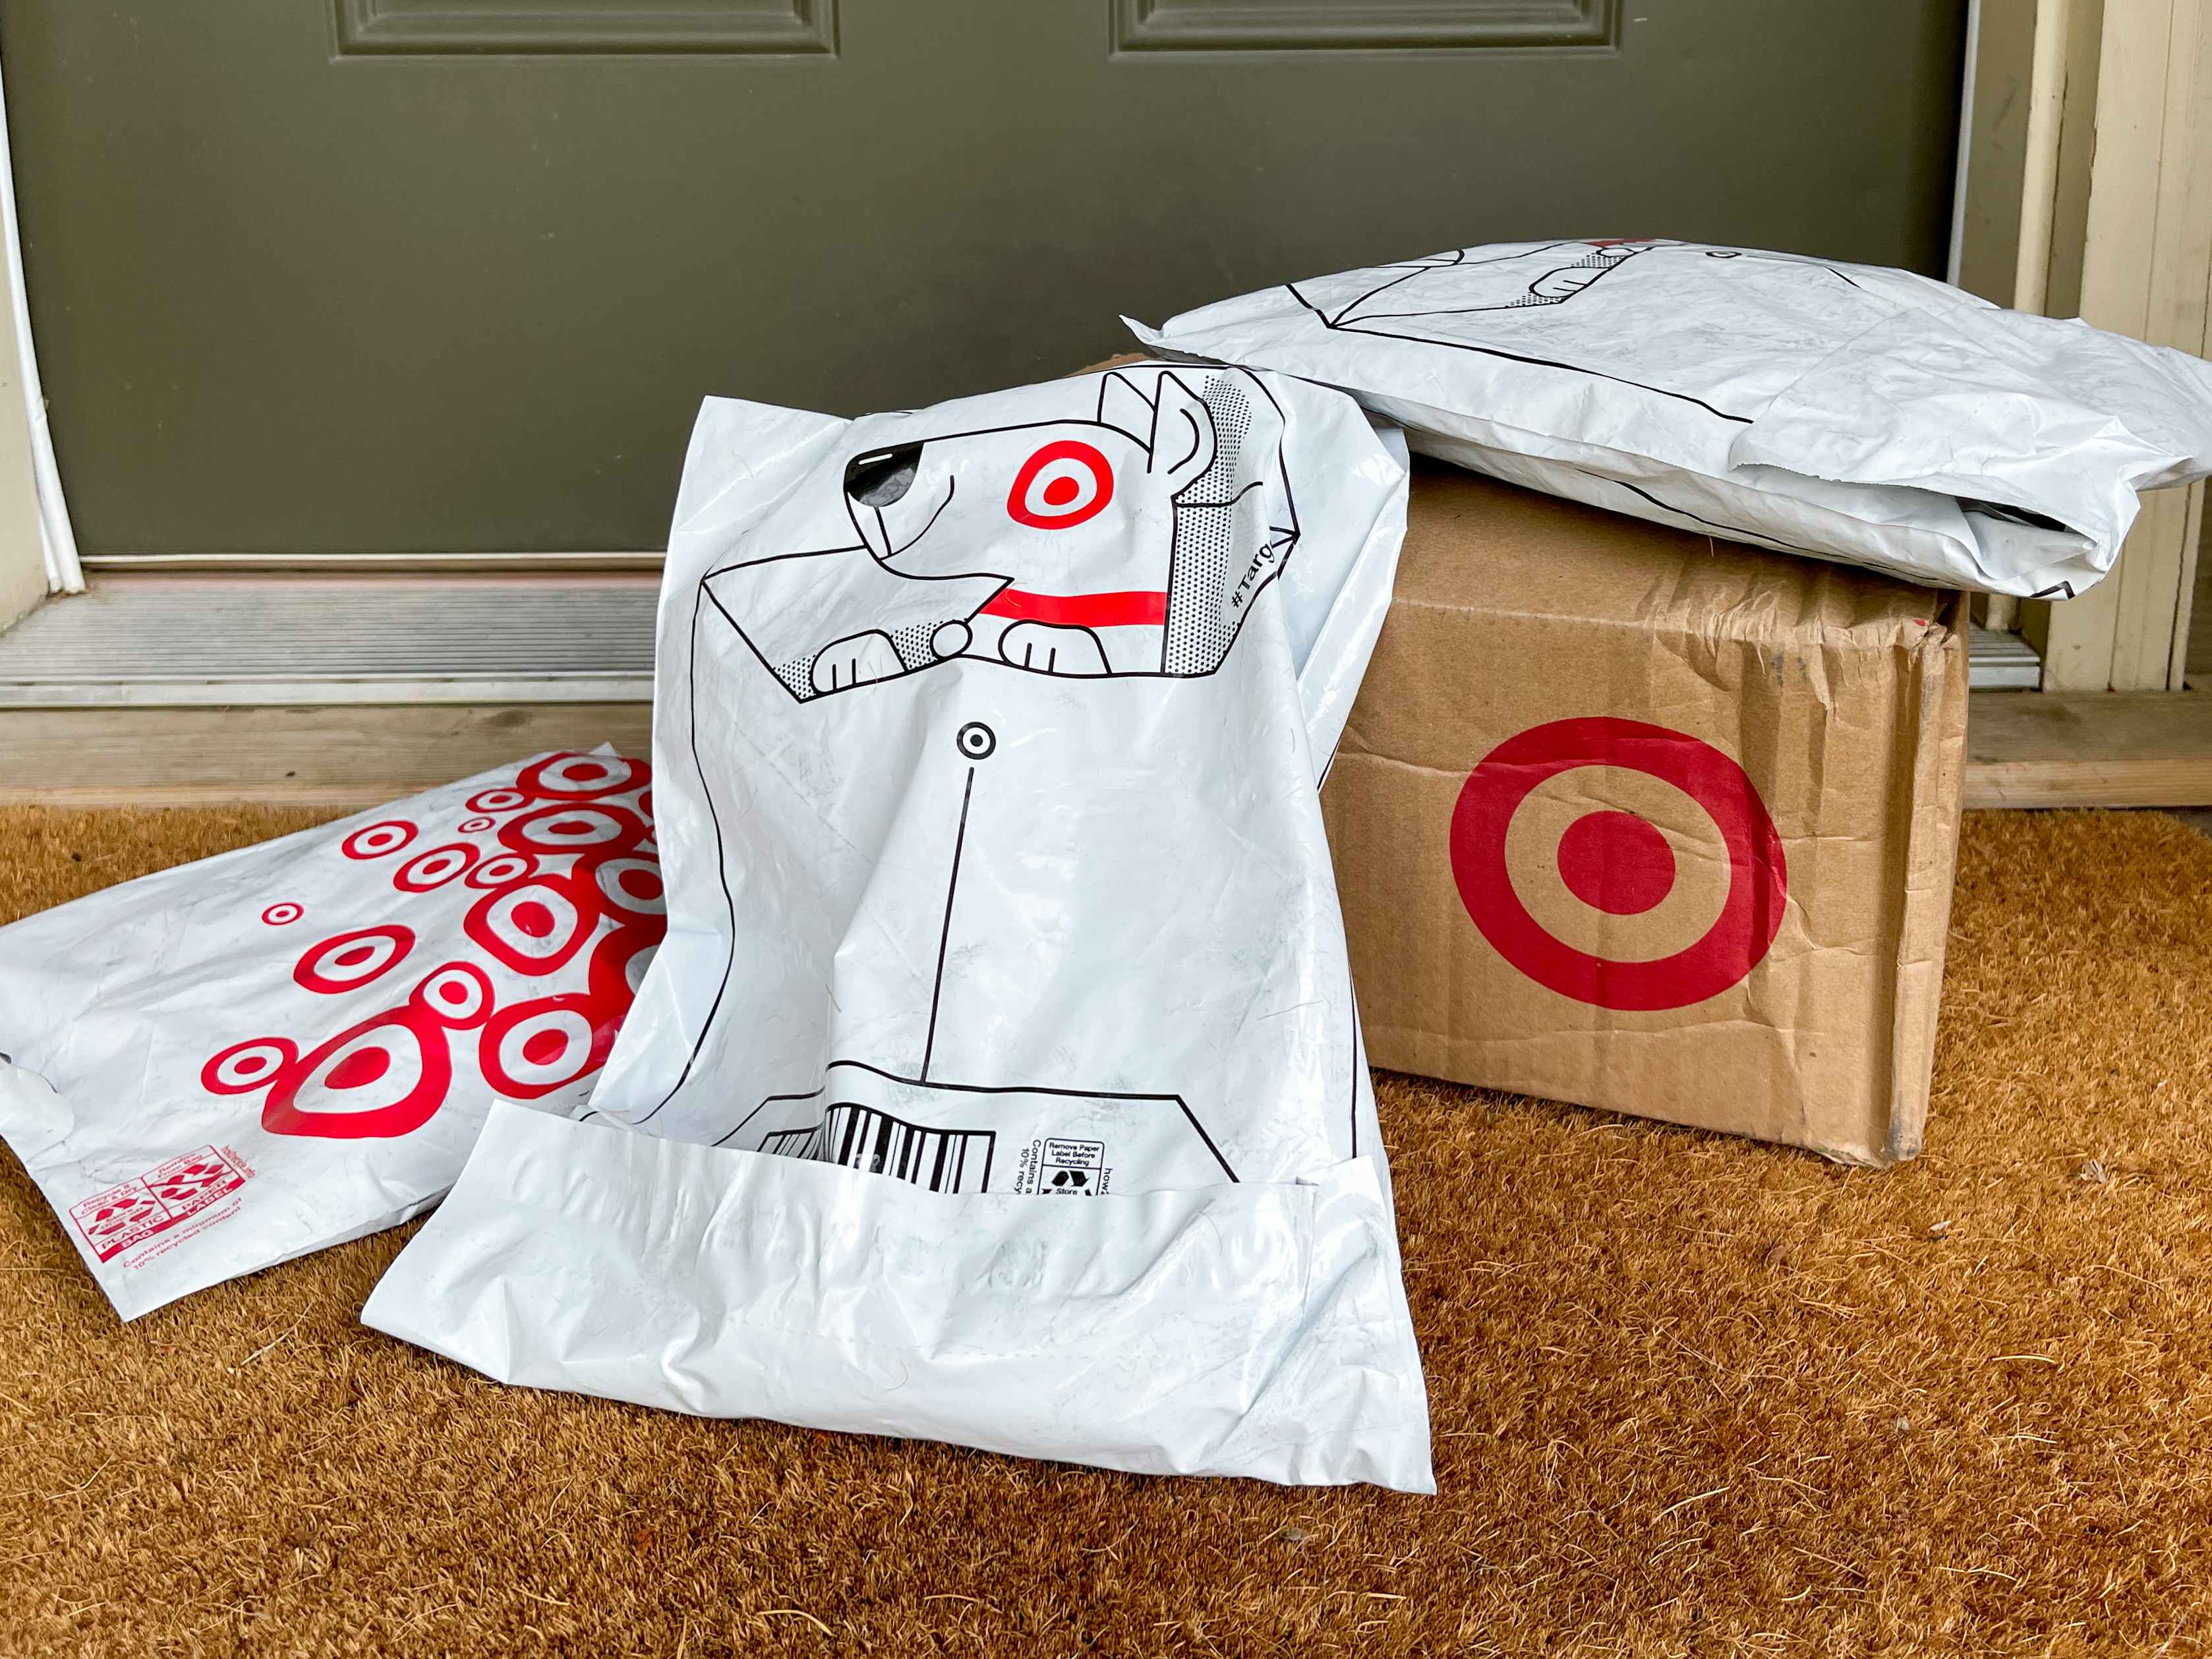 Target online order on a doorstep.